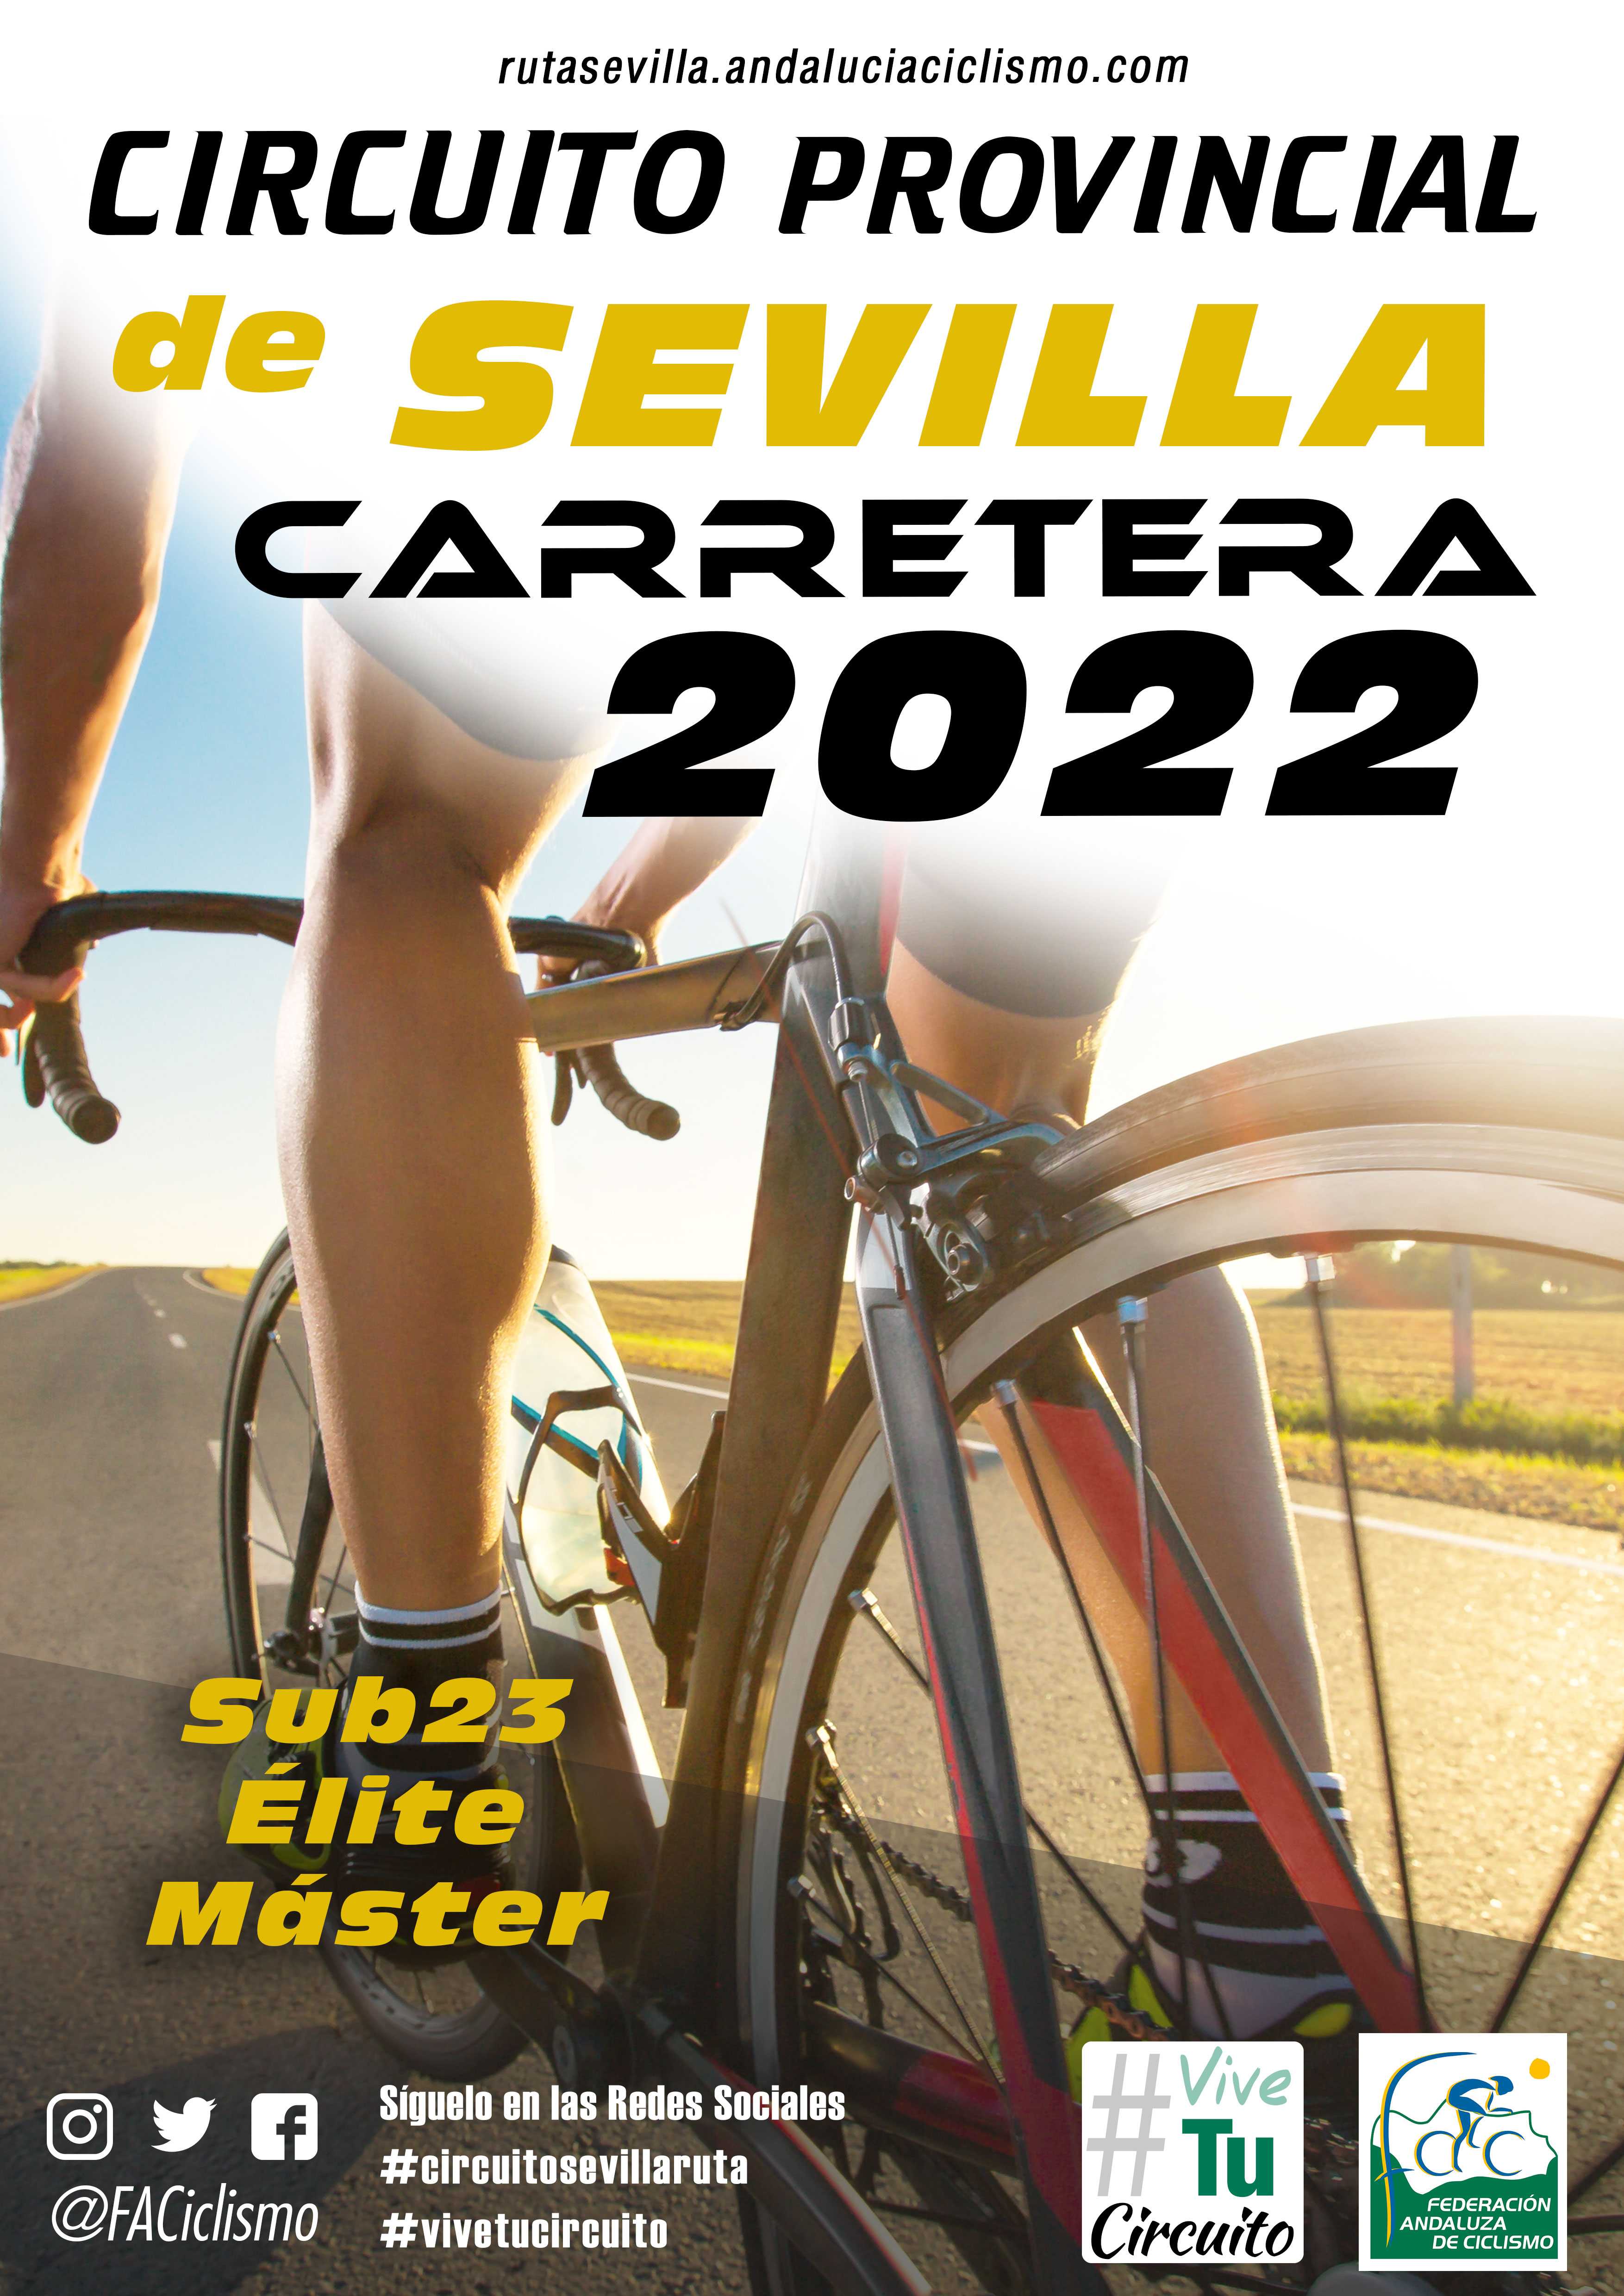 El Circuito Provincial Sevilla Carretera 2022 se reactivará en Bormujos